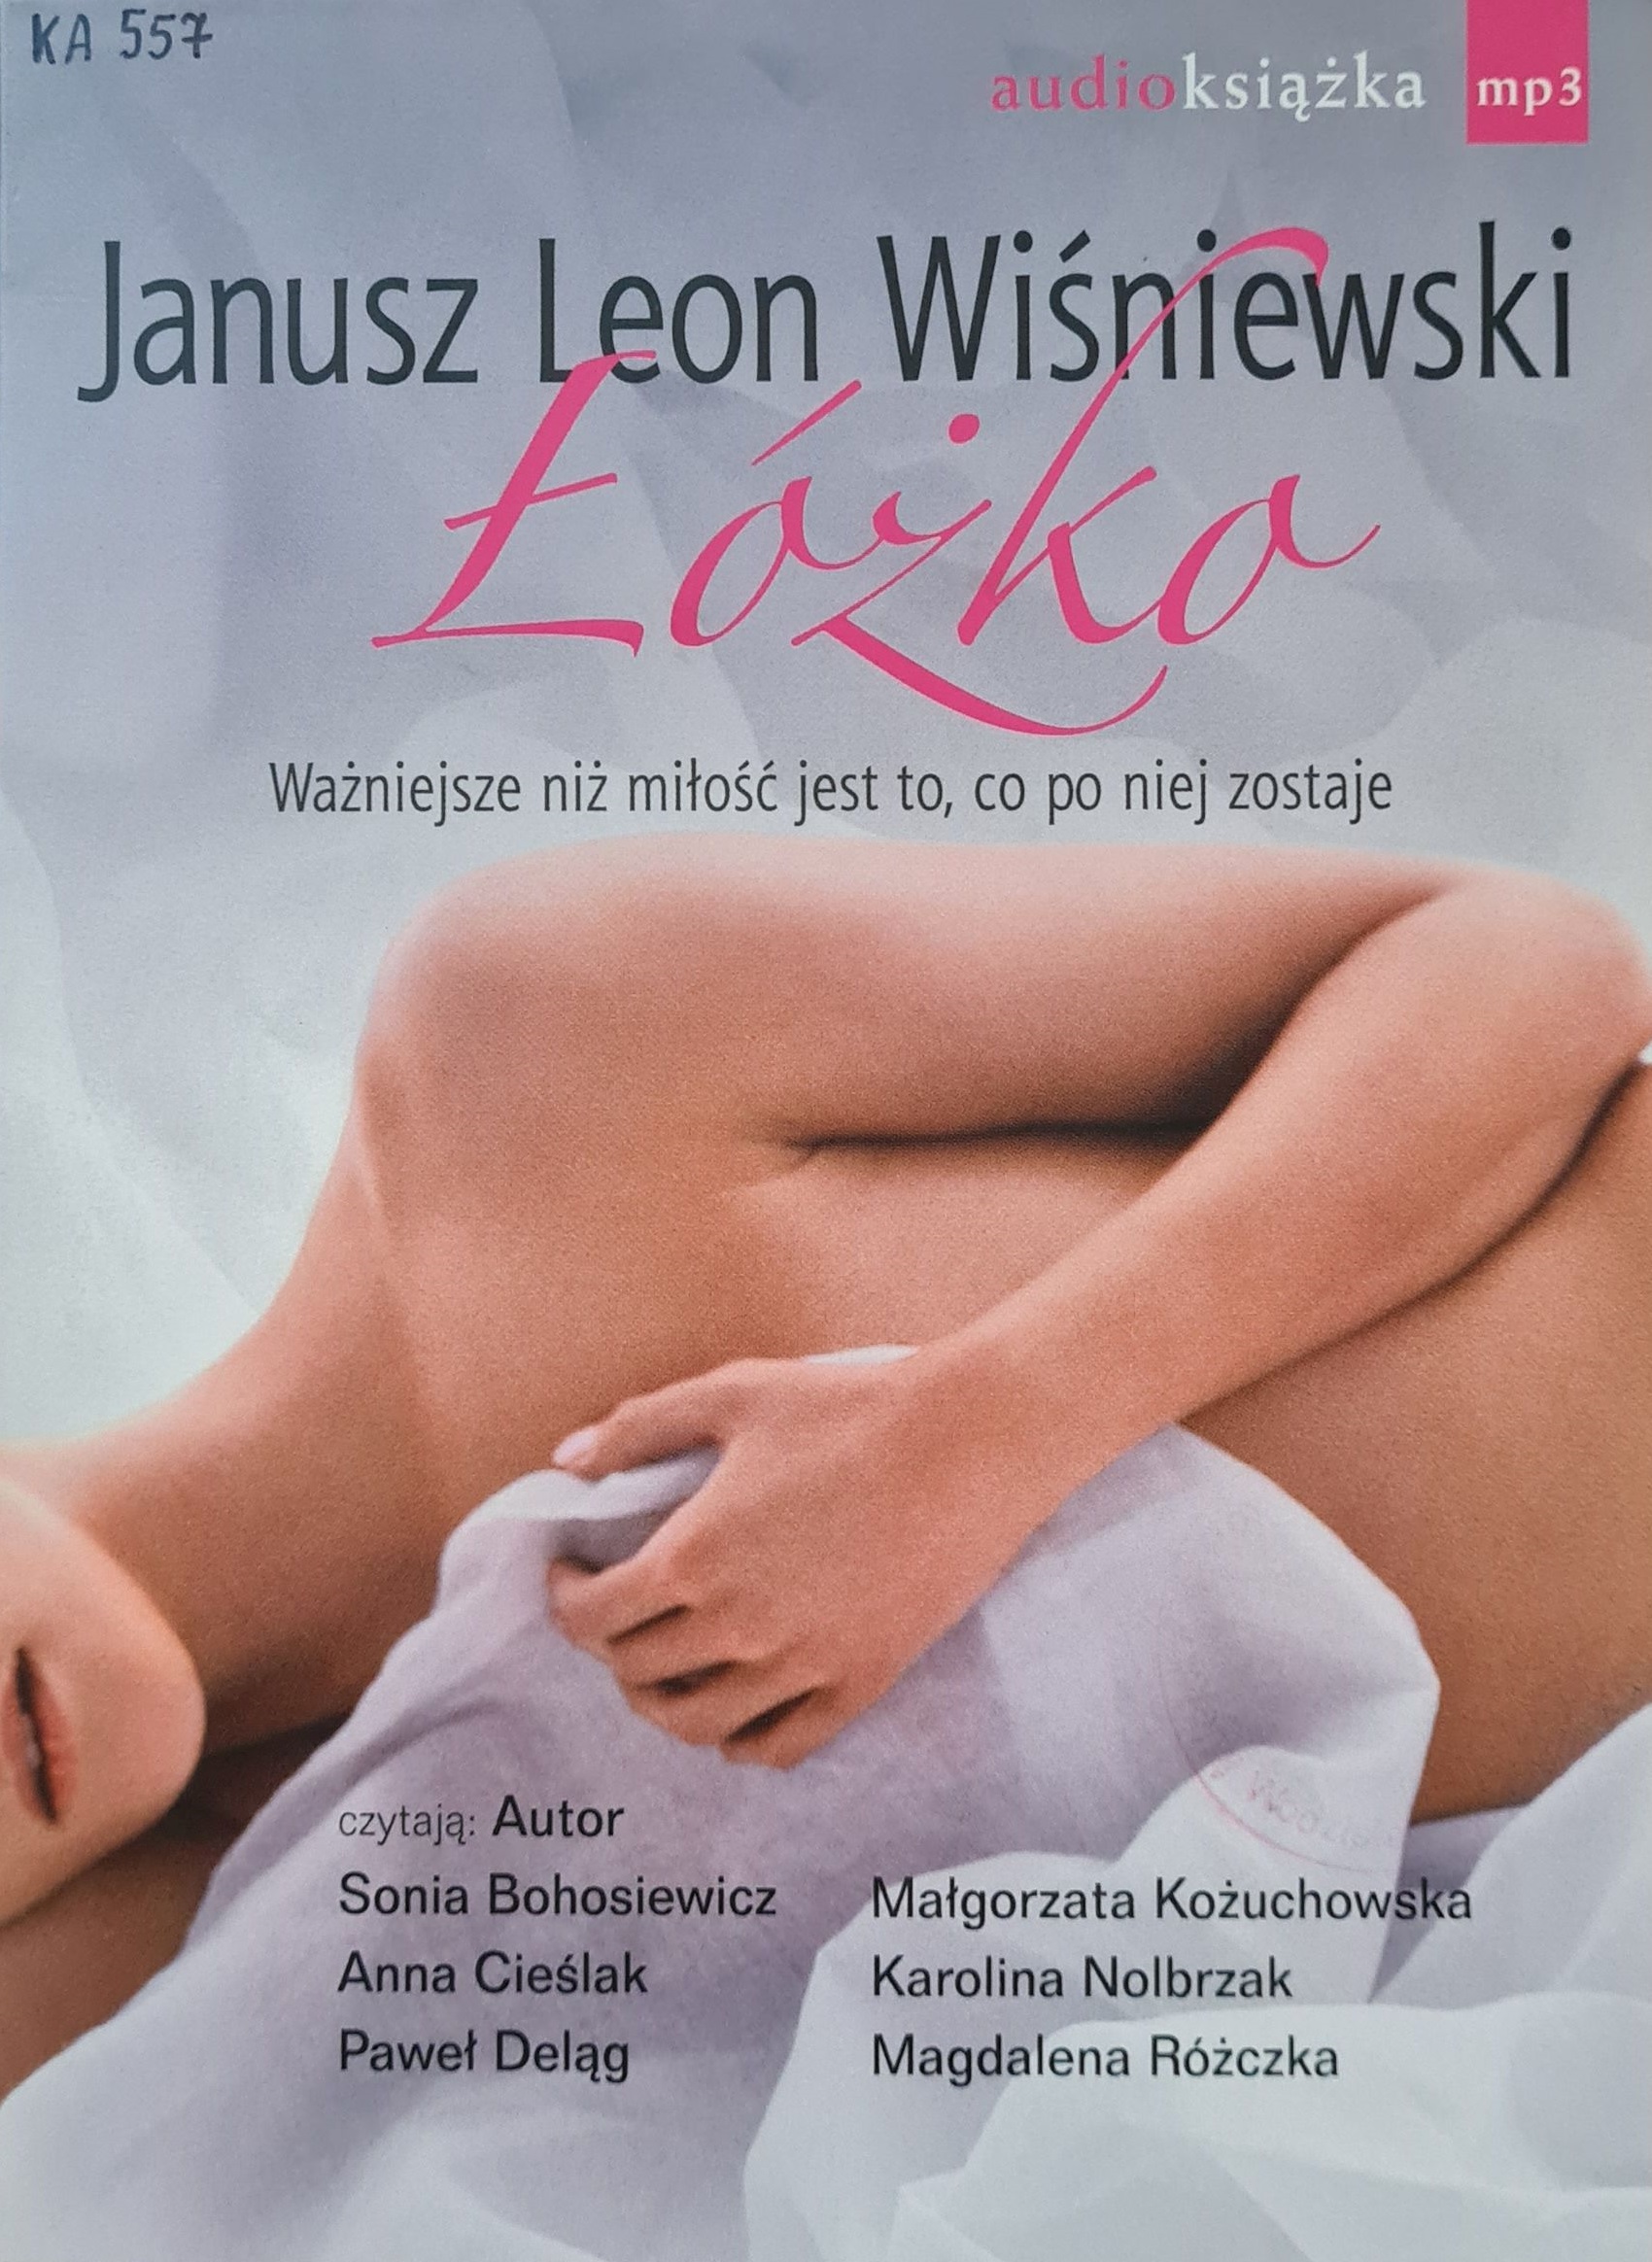 Wiśniewski Janusz Leon - Łóżko